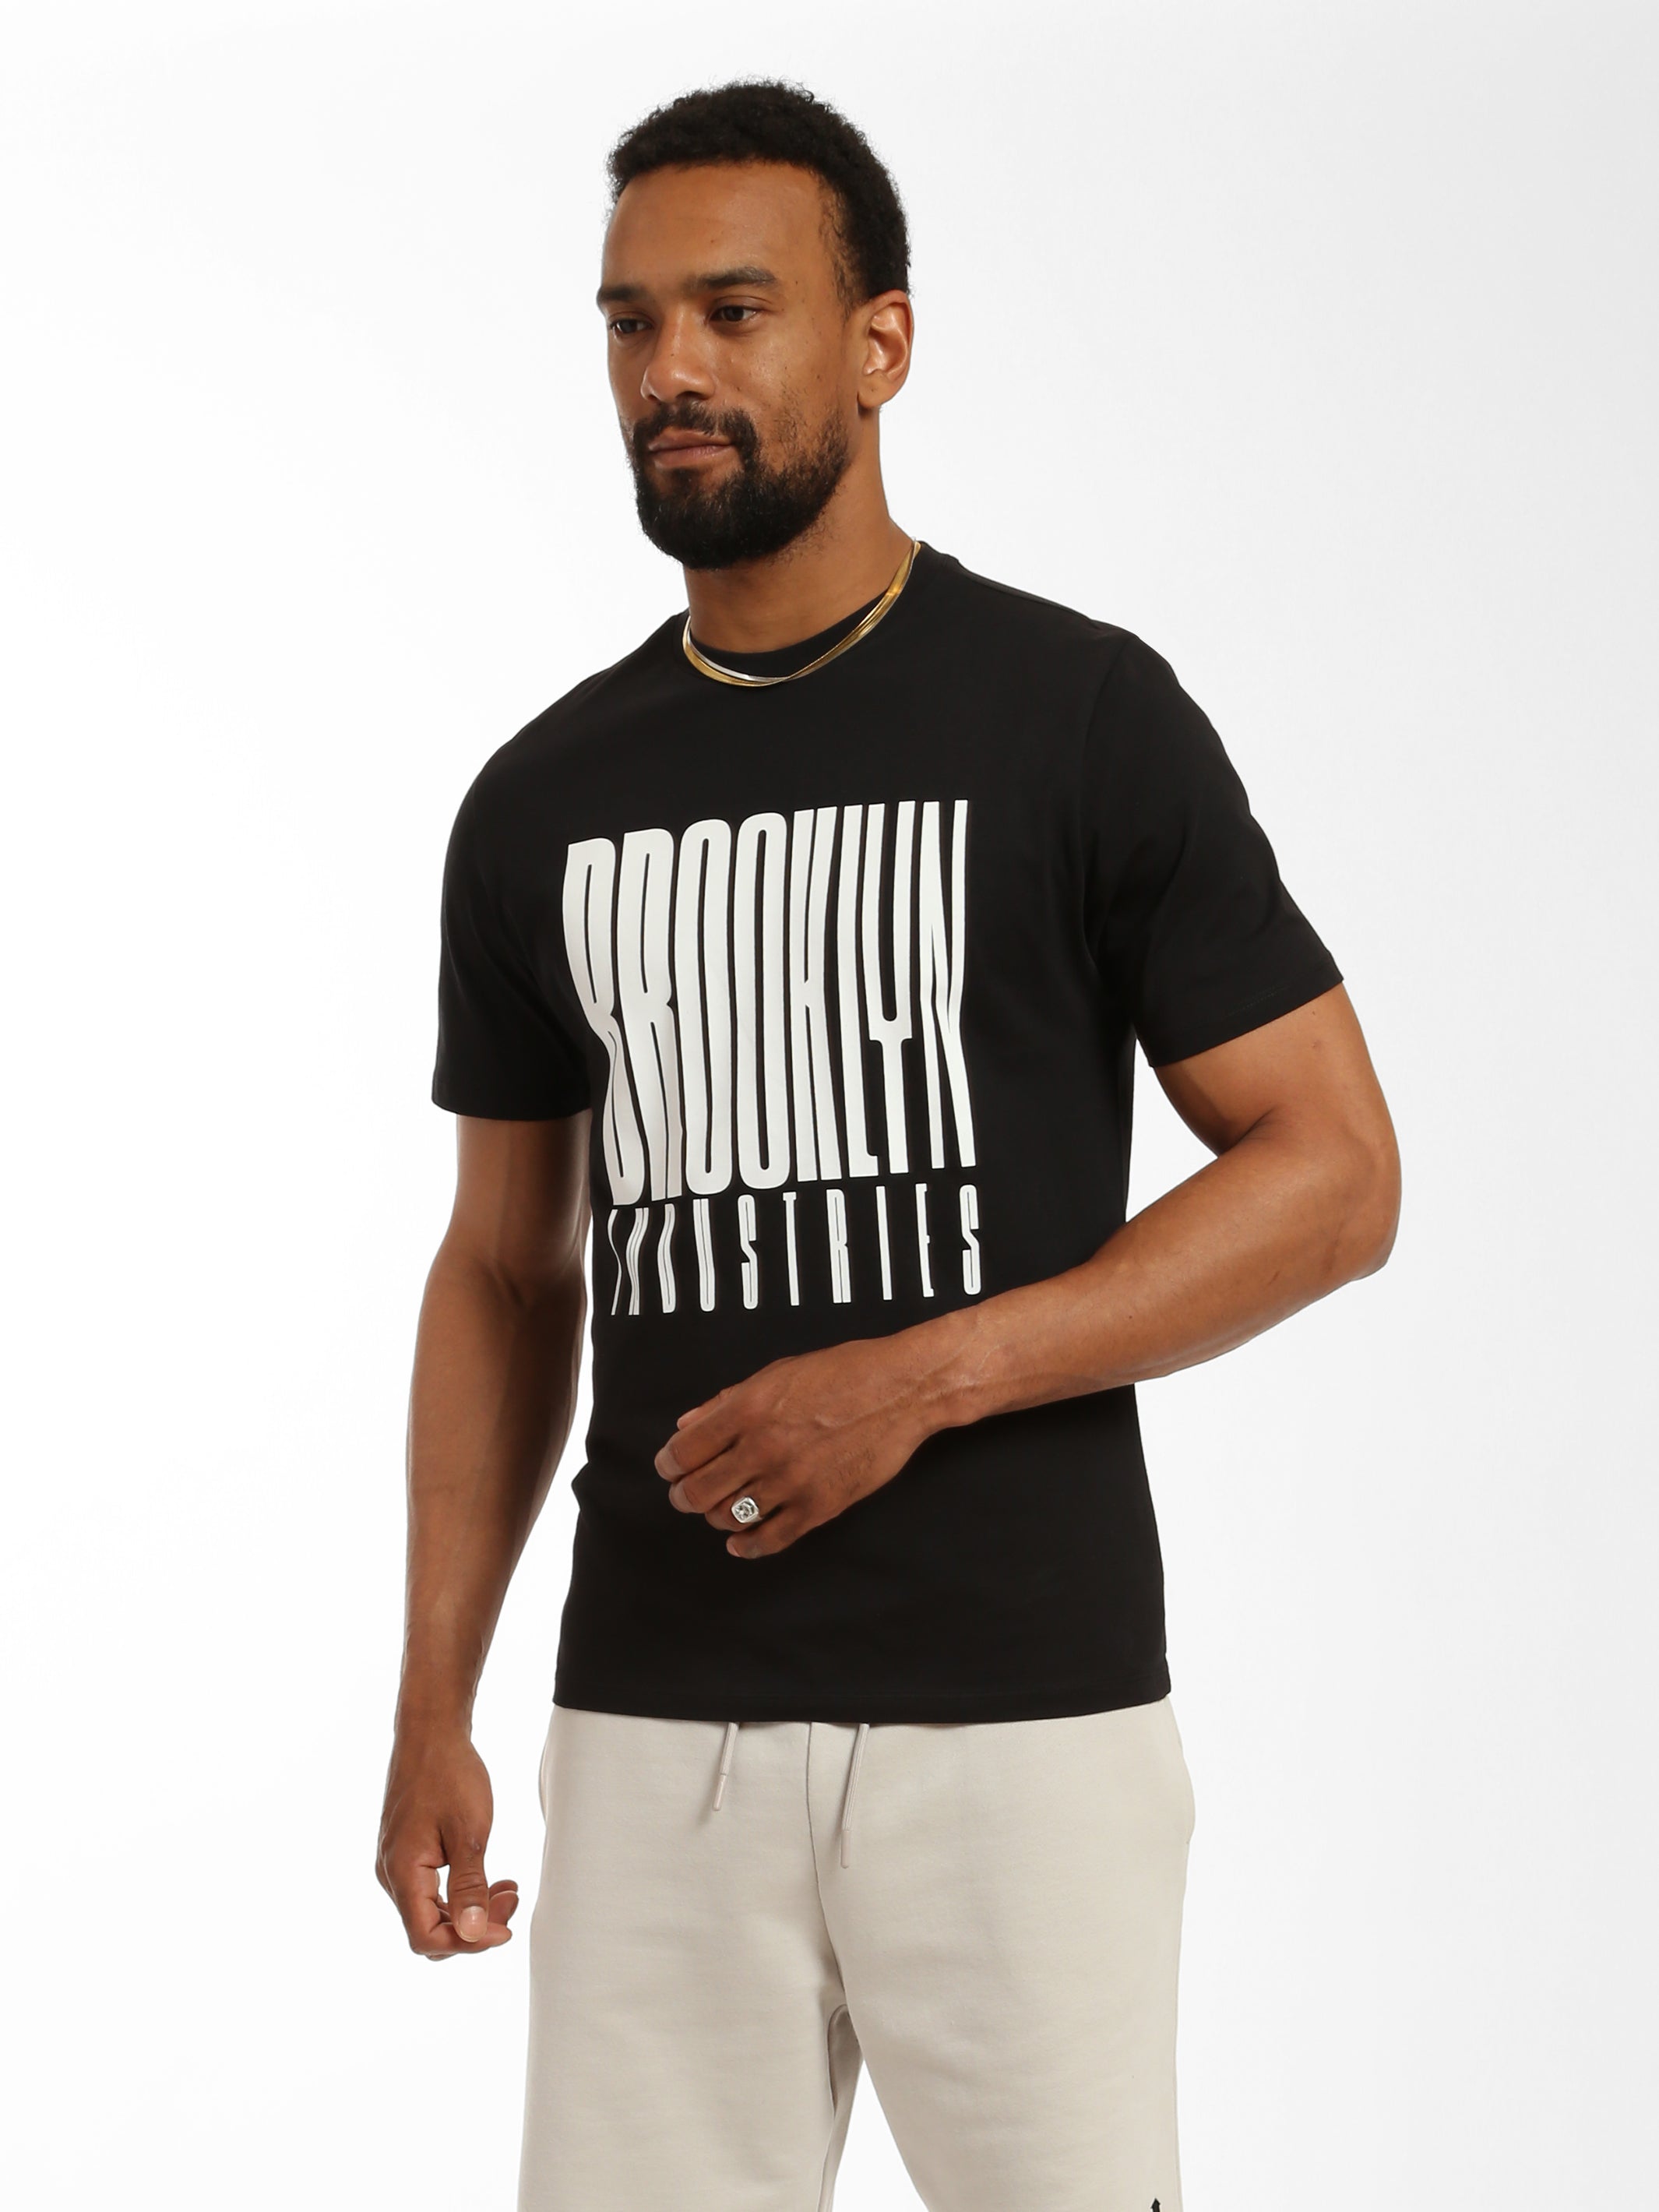 Men's Print T-shirt in Black - BROOKLYN INDUSTRIES